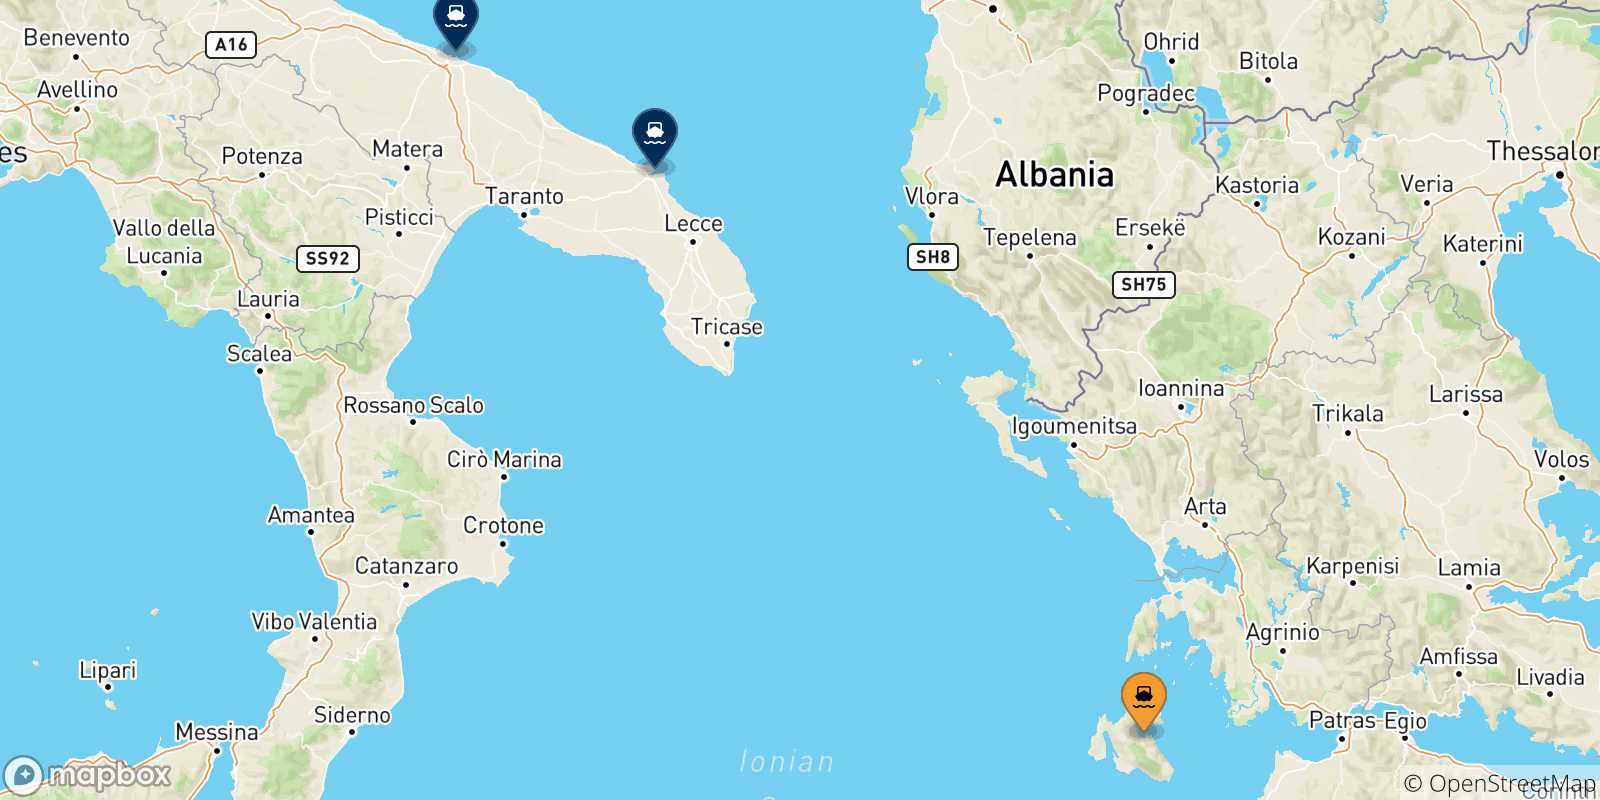 Mappa delle possibili rotte tra Sami (Cefalonia) e l'Italia